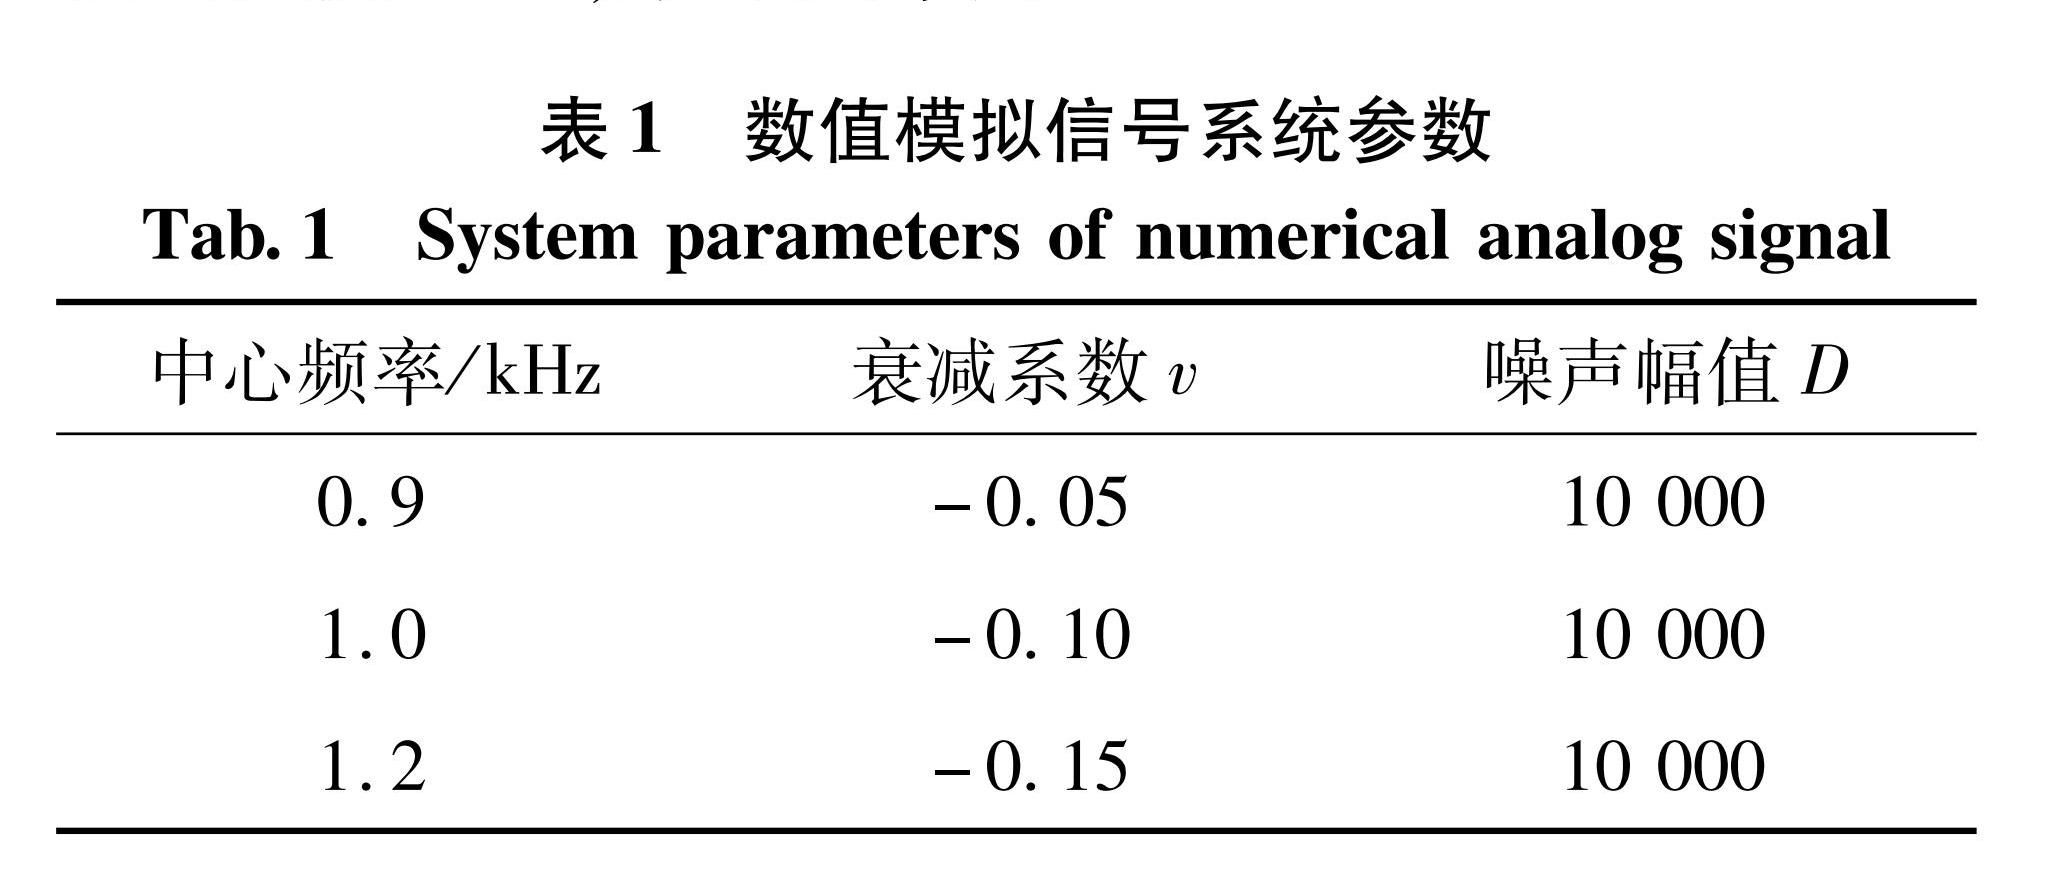 表1 数值模拟信号系统参数<br/>Tab.1 System parameters of numerical analog signal 